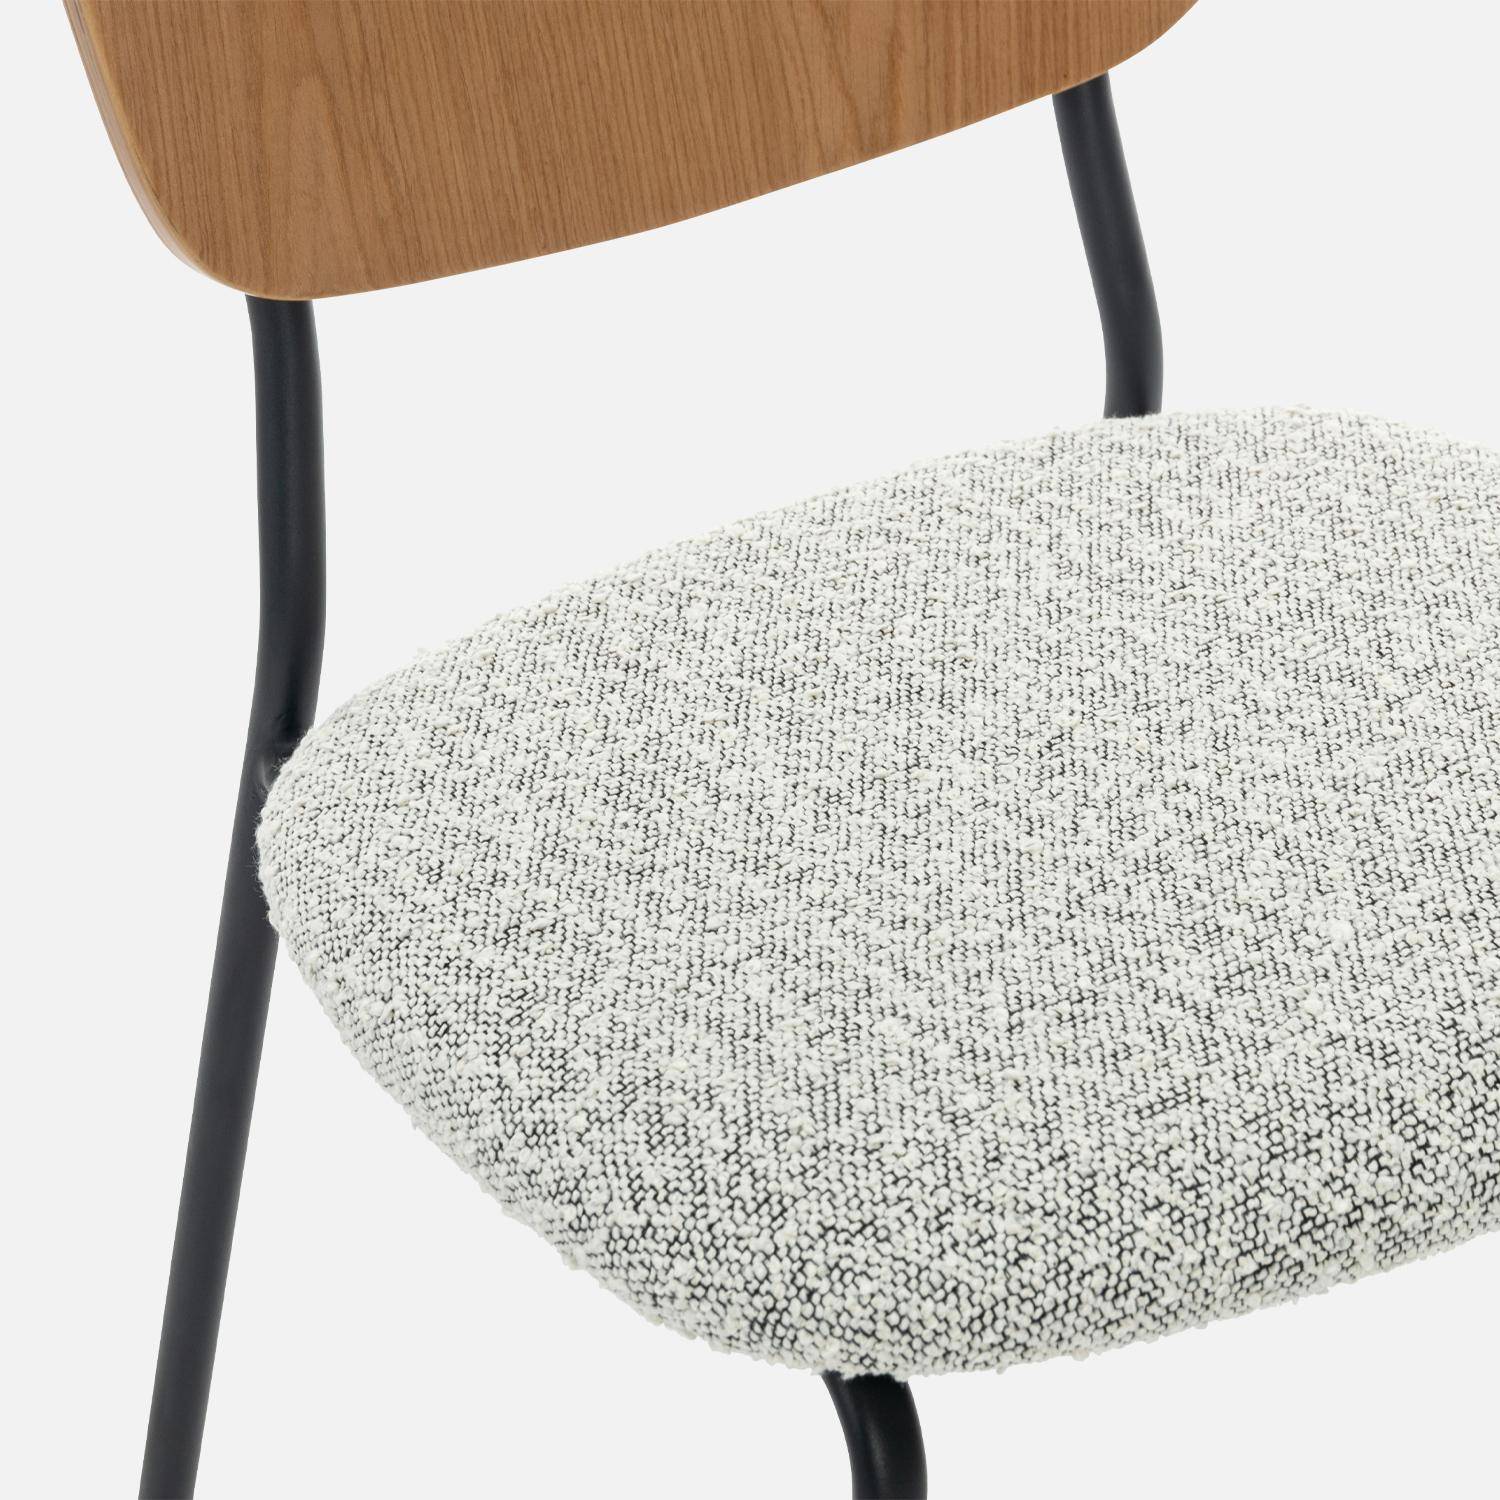 2er Set Stühle mit strukturiertem Bouclé-Sitz in weiß, Rückenlehne aus gewölbtem Pappelholz, Beine aus mattschwarzem Metall Photo4